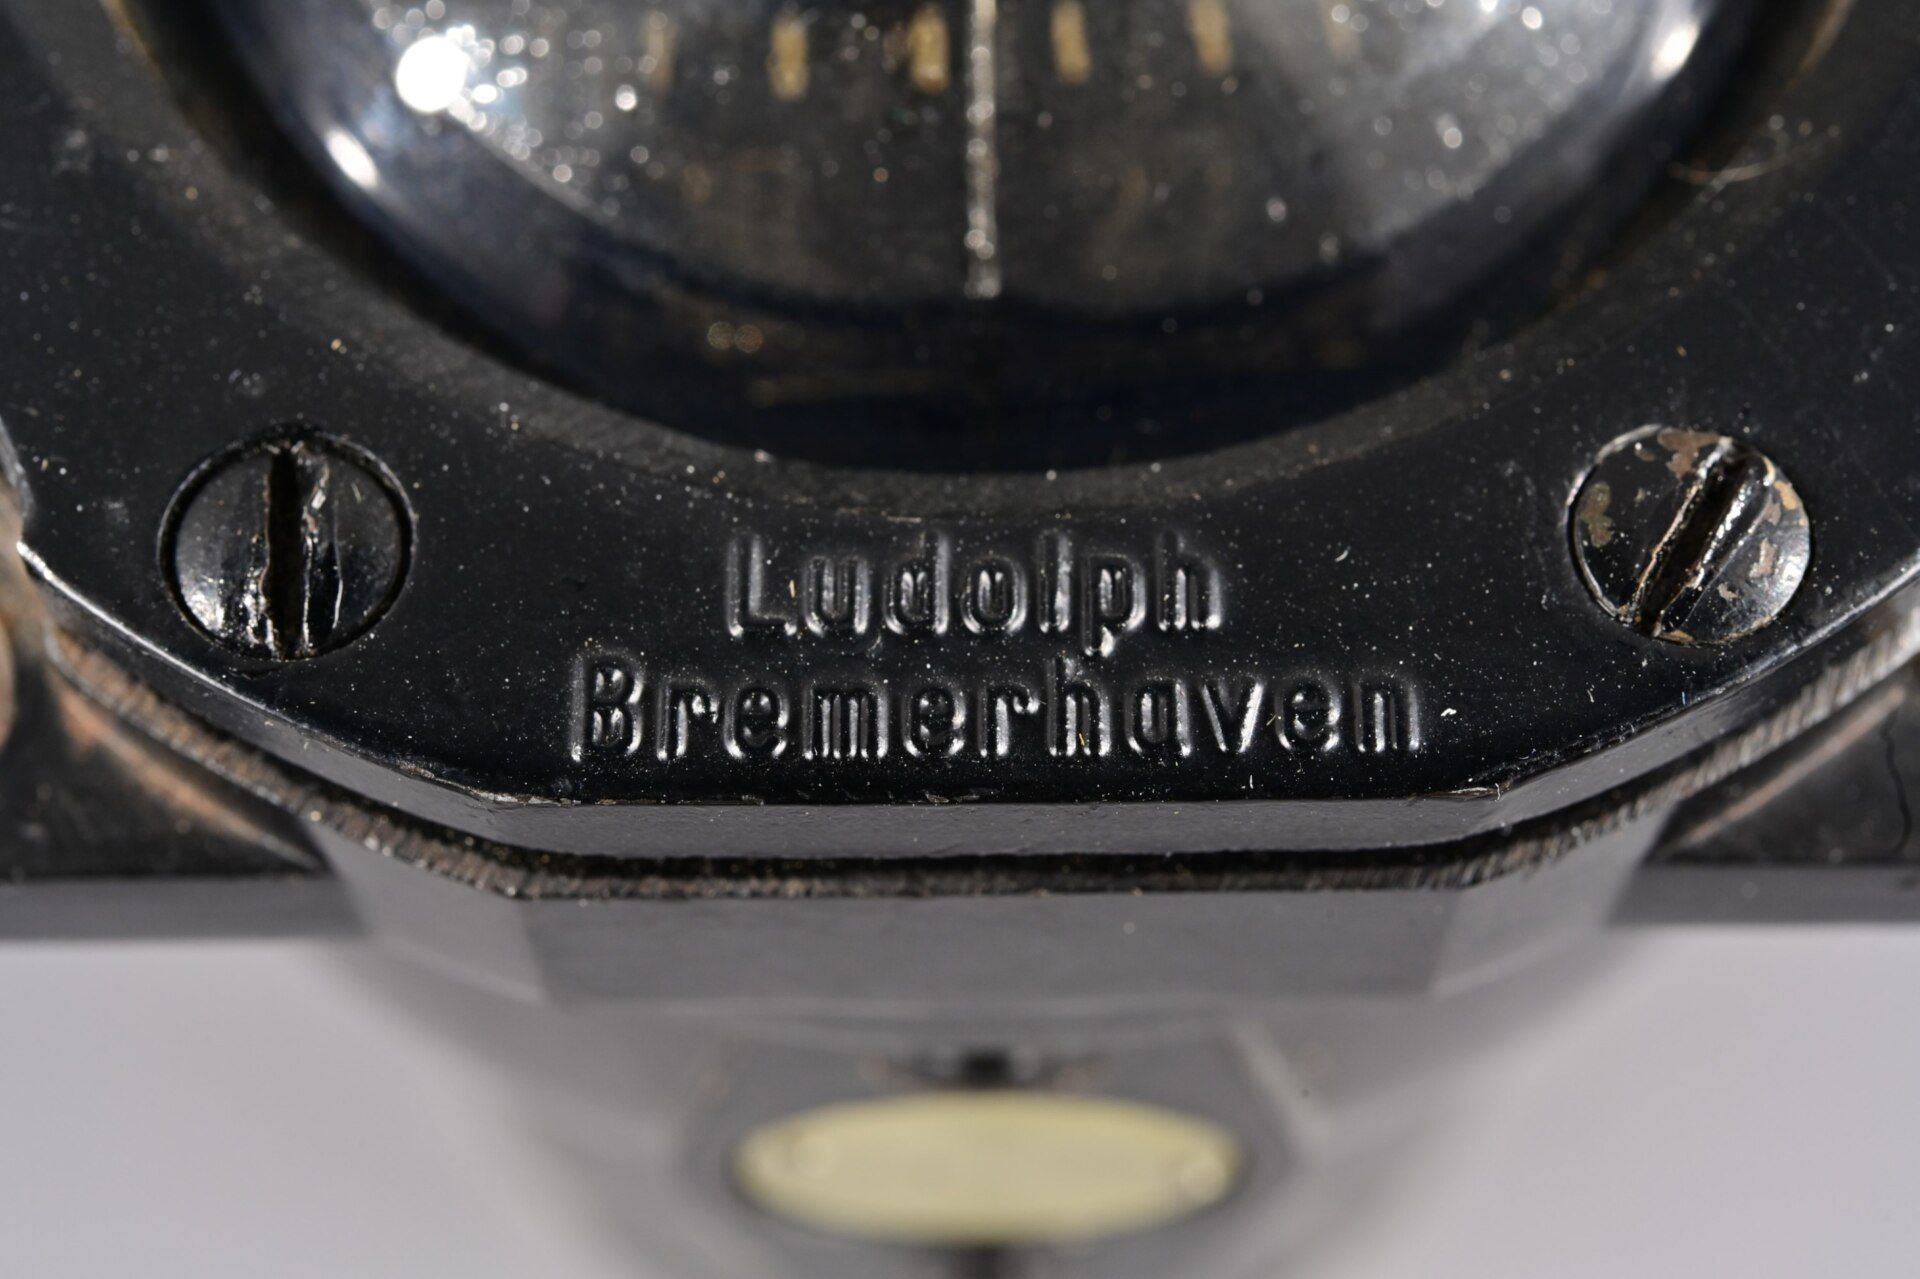 Älterer Führerkompass/Bordinstrument aus einem Flugzeug-Cockpit, Hersteller Ludolph/Bremerhaven, We - Image 7 of 8